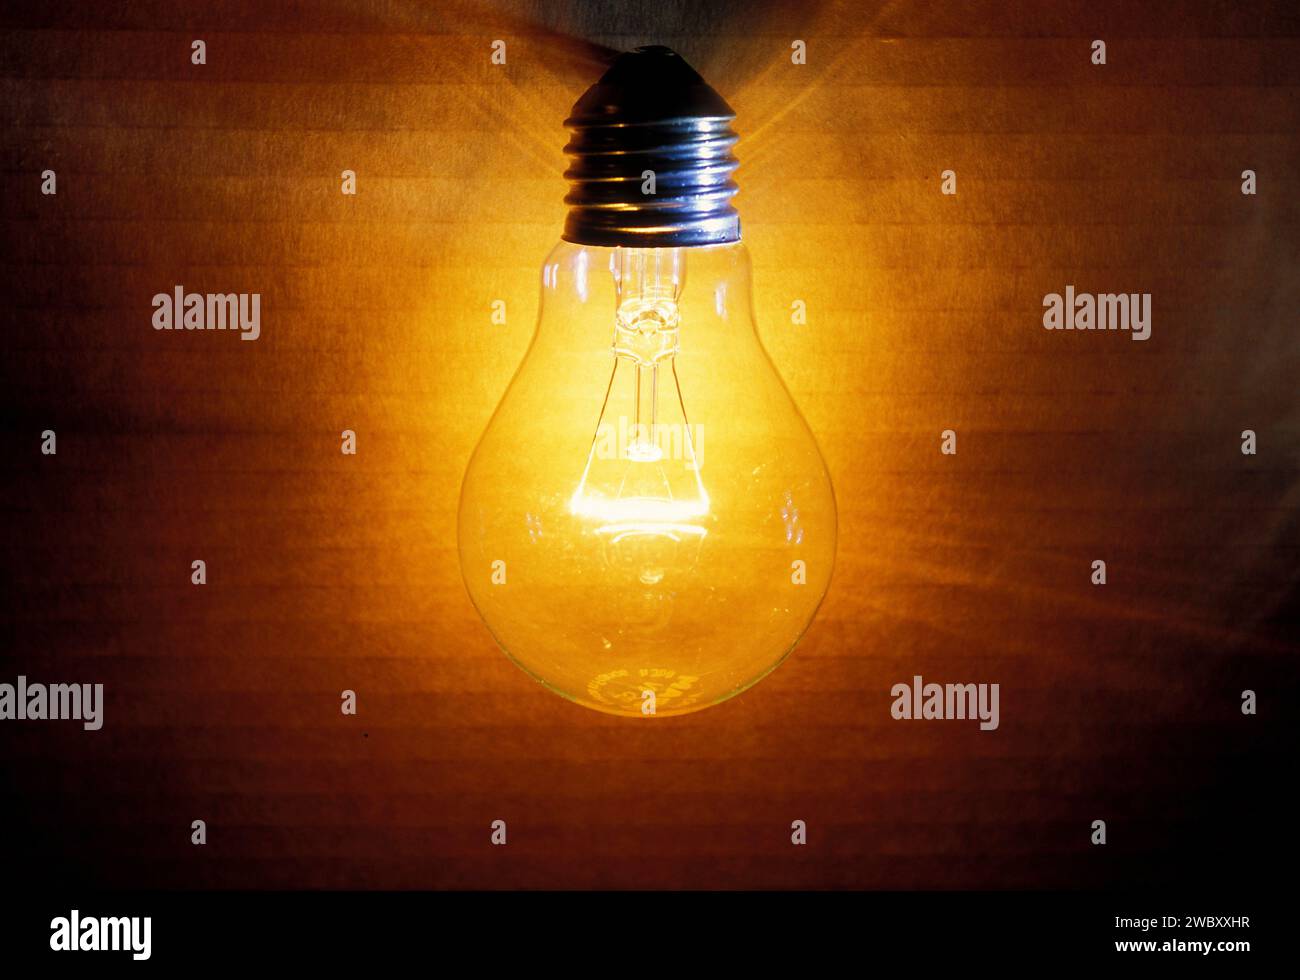 https://c8.alamy.com/compde/2wbxxhr/nahaufnahme-einer-alten-brennenden-gluhlampe-lampenfassung-einem-karton-als-hintergrund-wird-beleuchtet-mit-einem-warmen-gelben-und-orangen-licht-beleuchtet-2wbxxhr.jpg